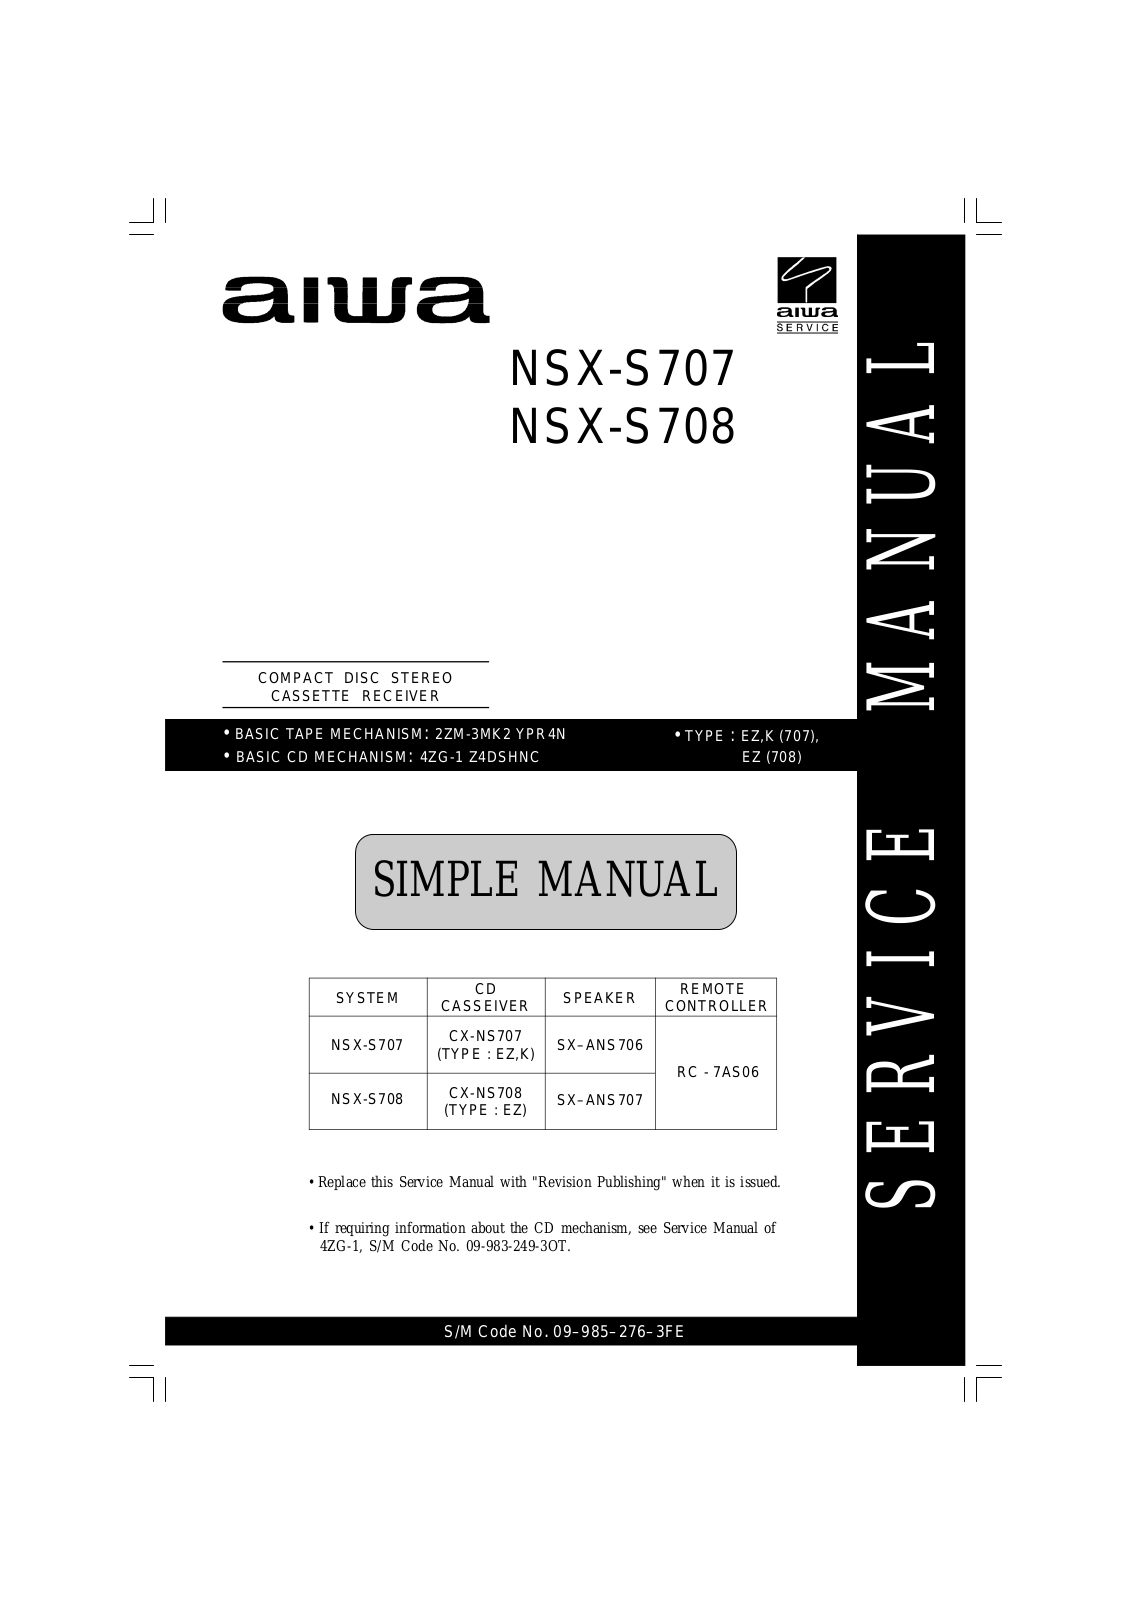 Aiwa NSXS-707, NSXS-708 Service manual